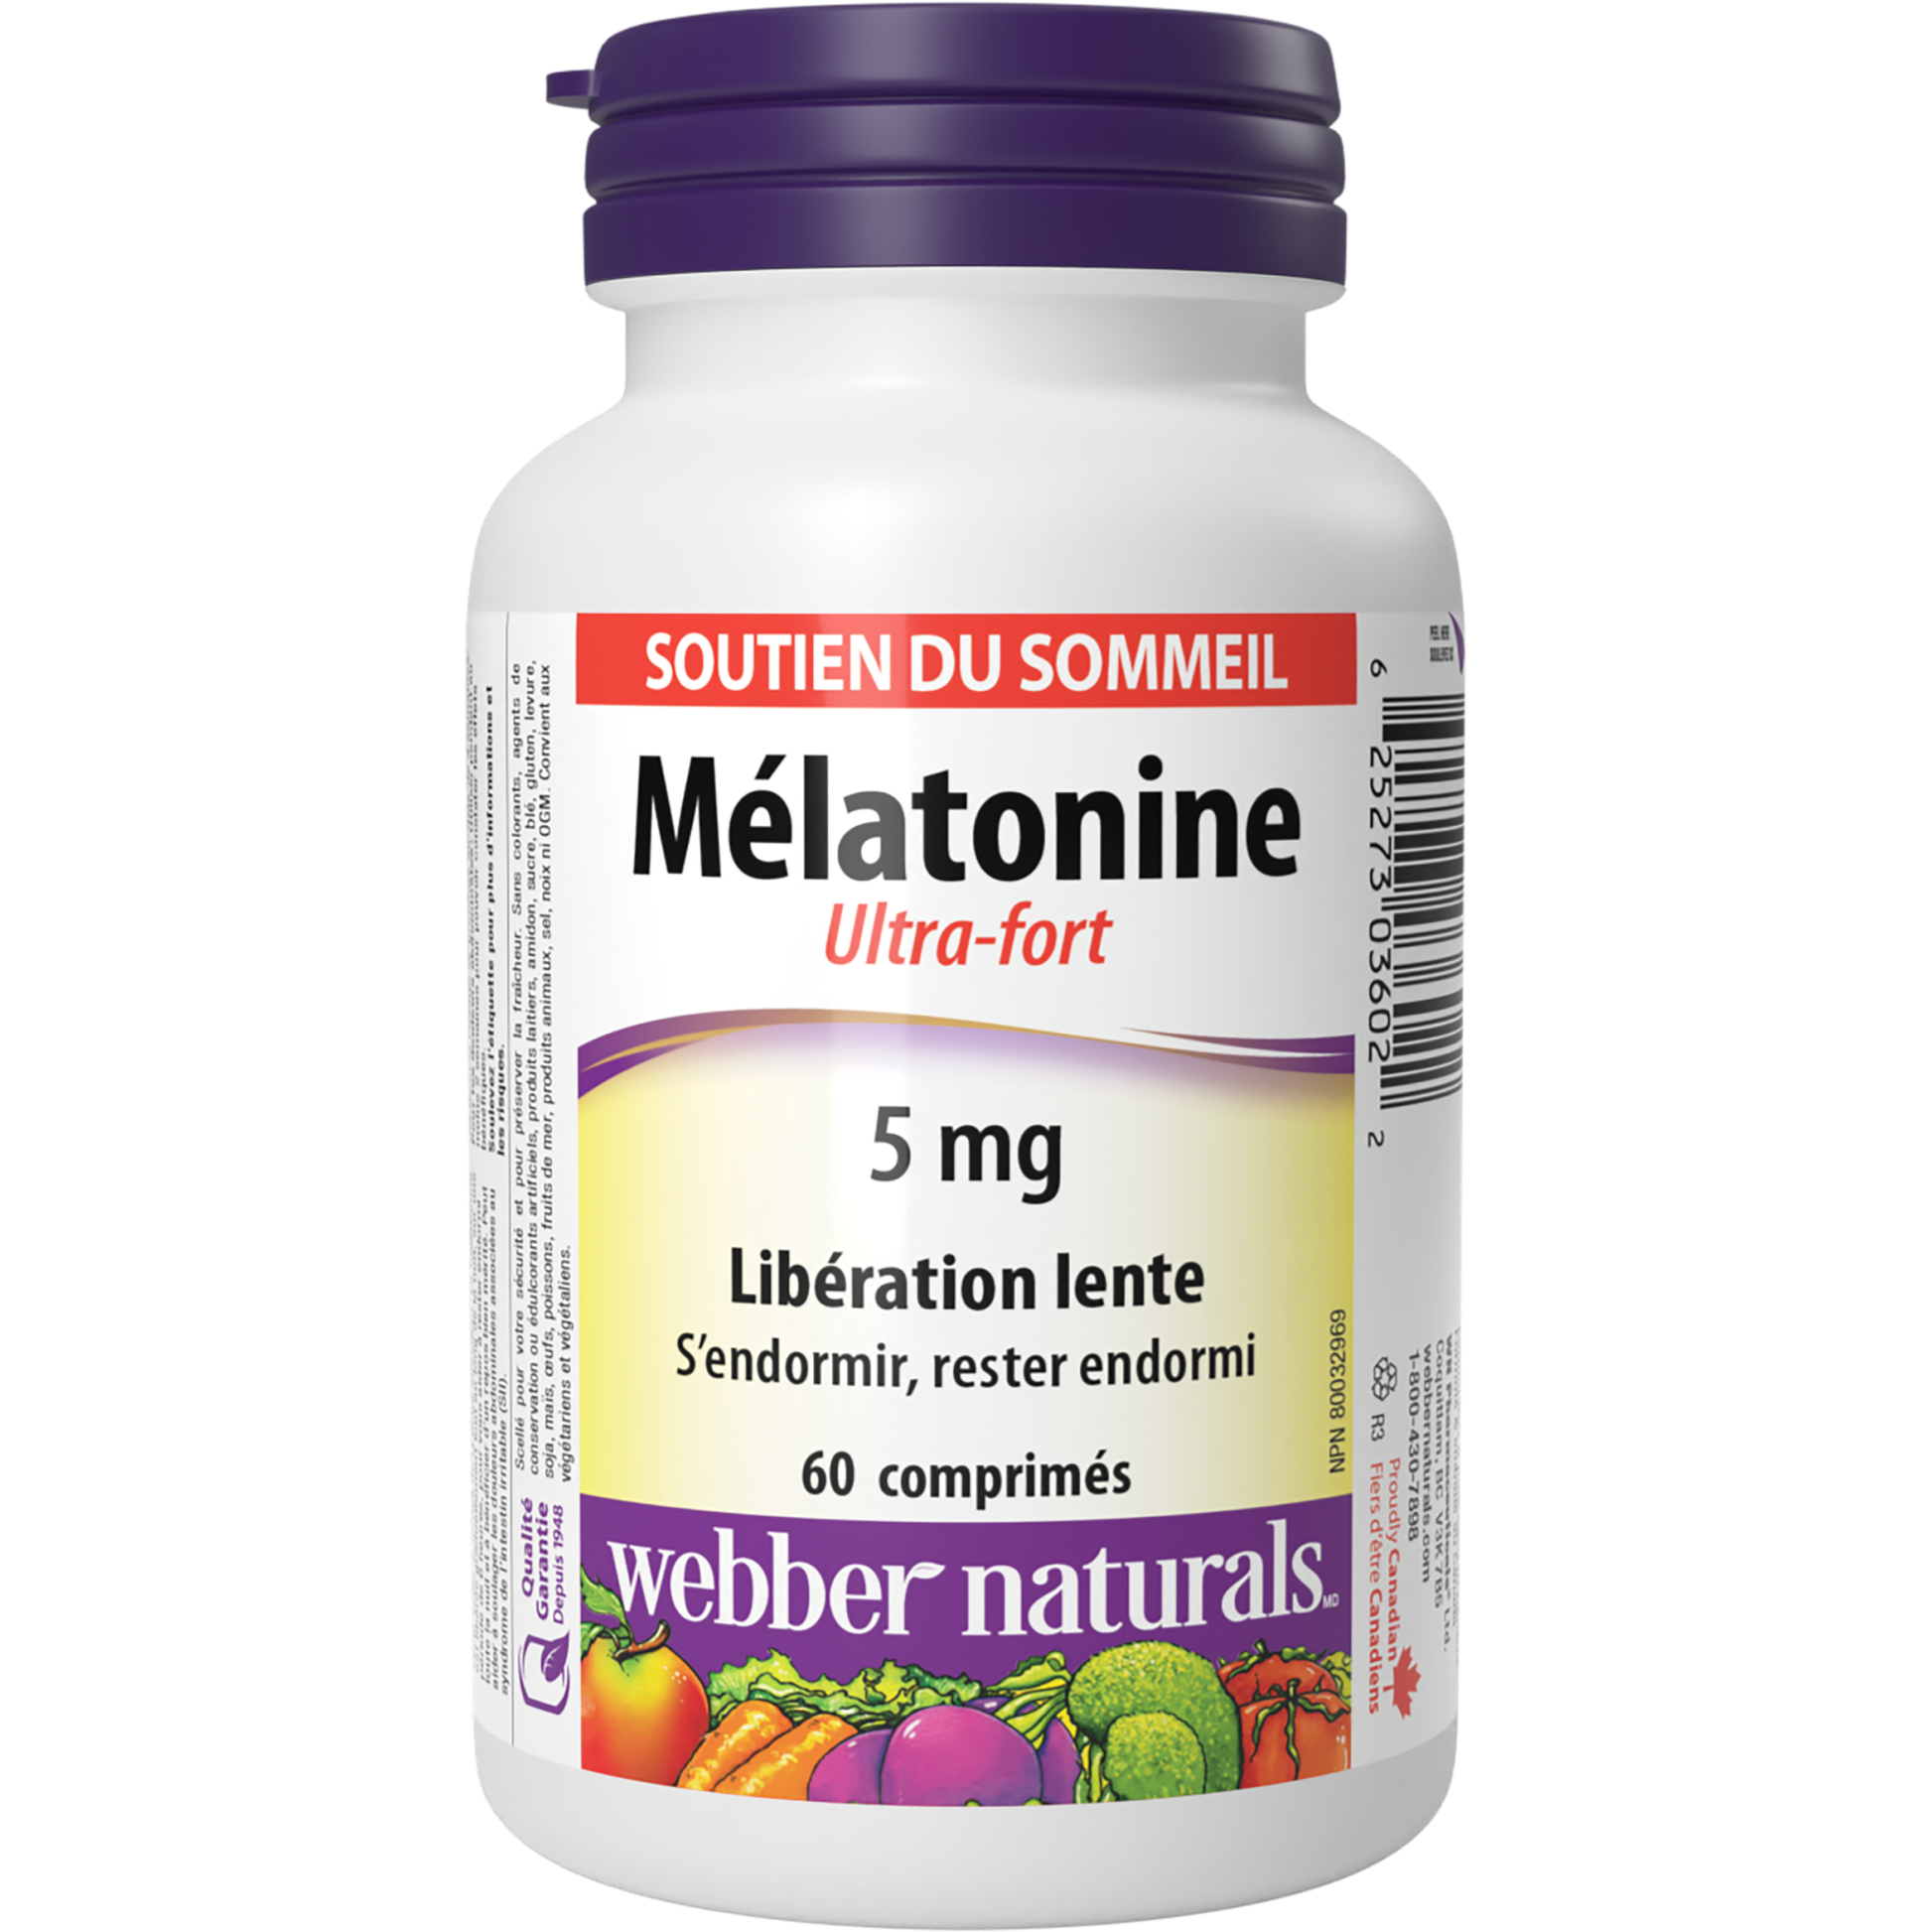 Mélatonine Ultra-Fort Libération lente 5 mg for Webber Naturals|v|hi-res|WN3602